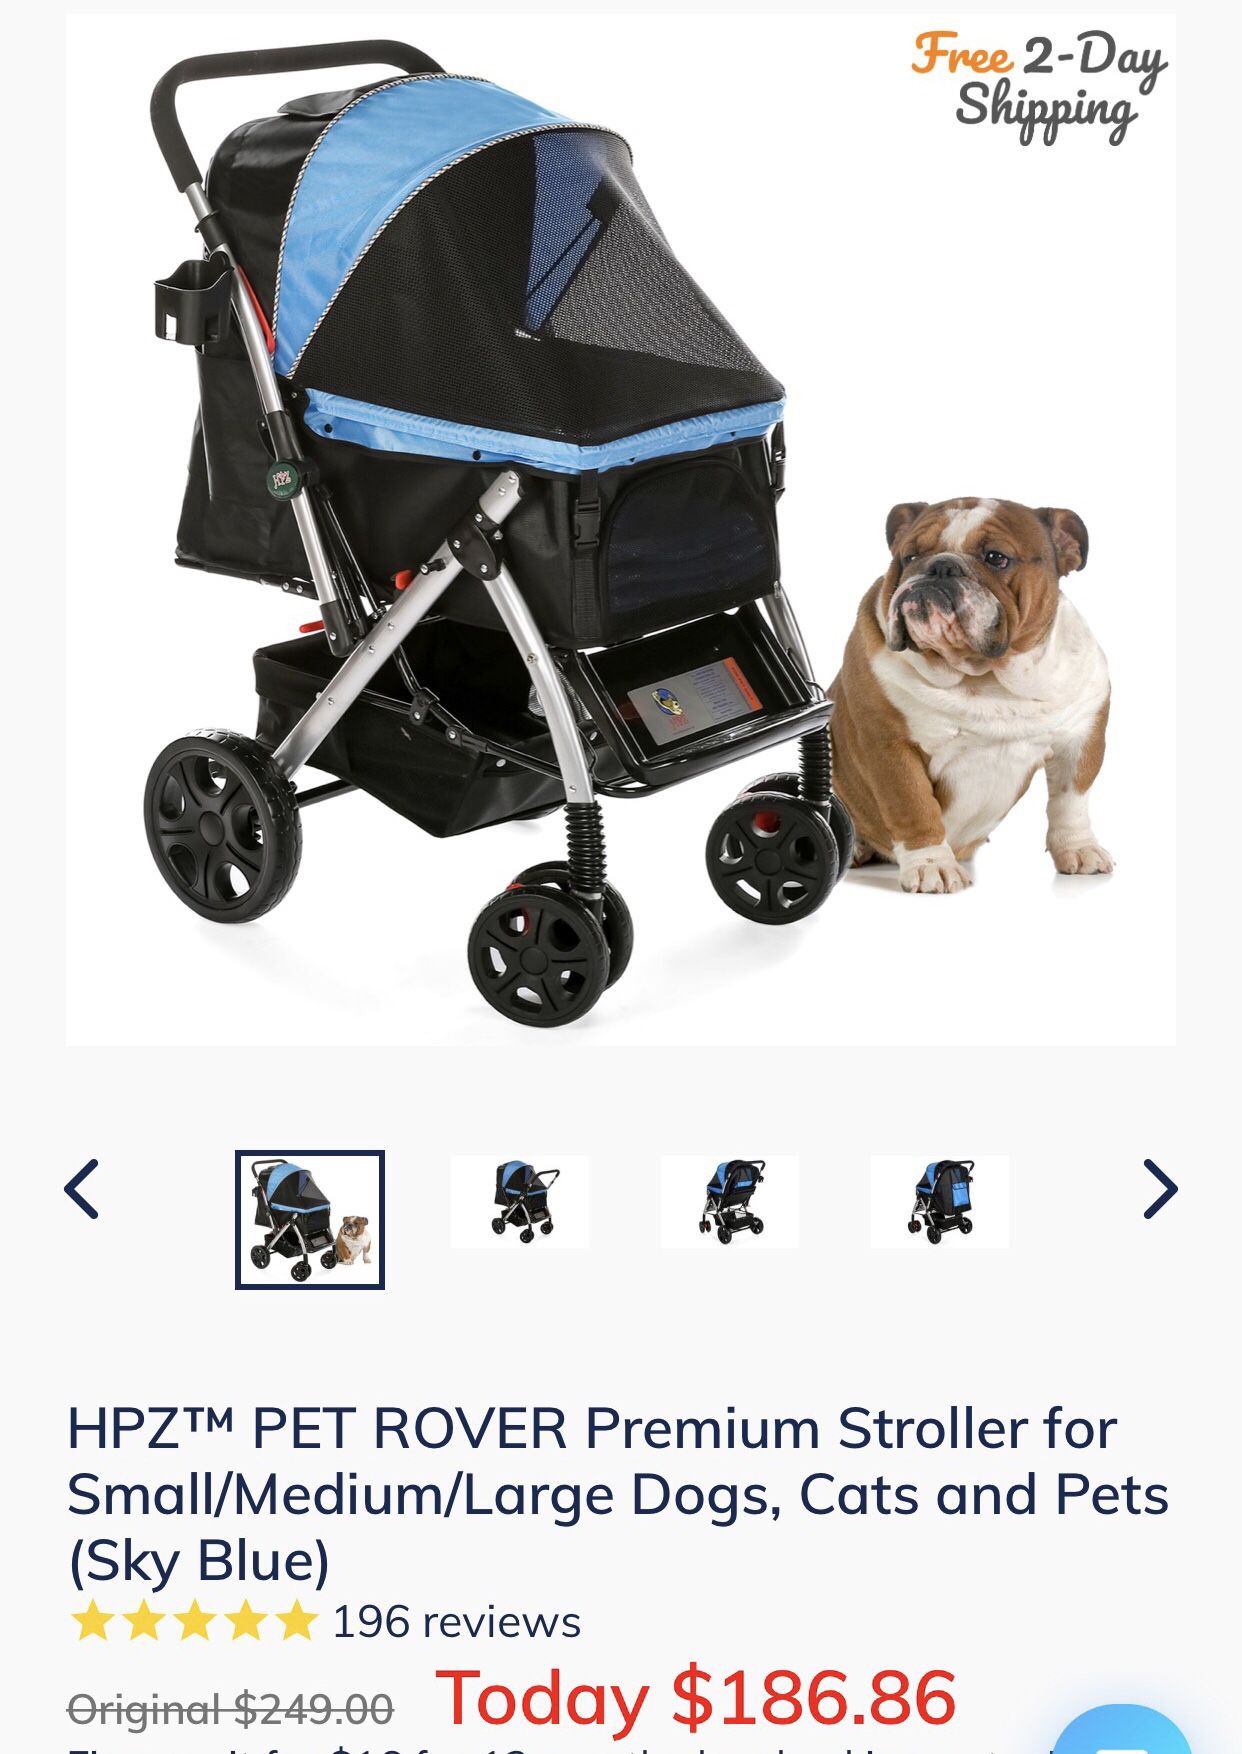 Stroller for dog